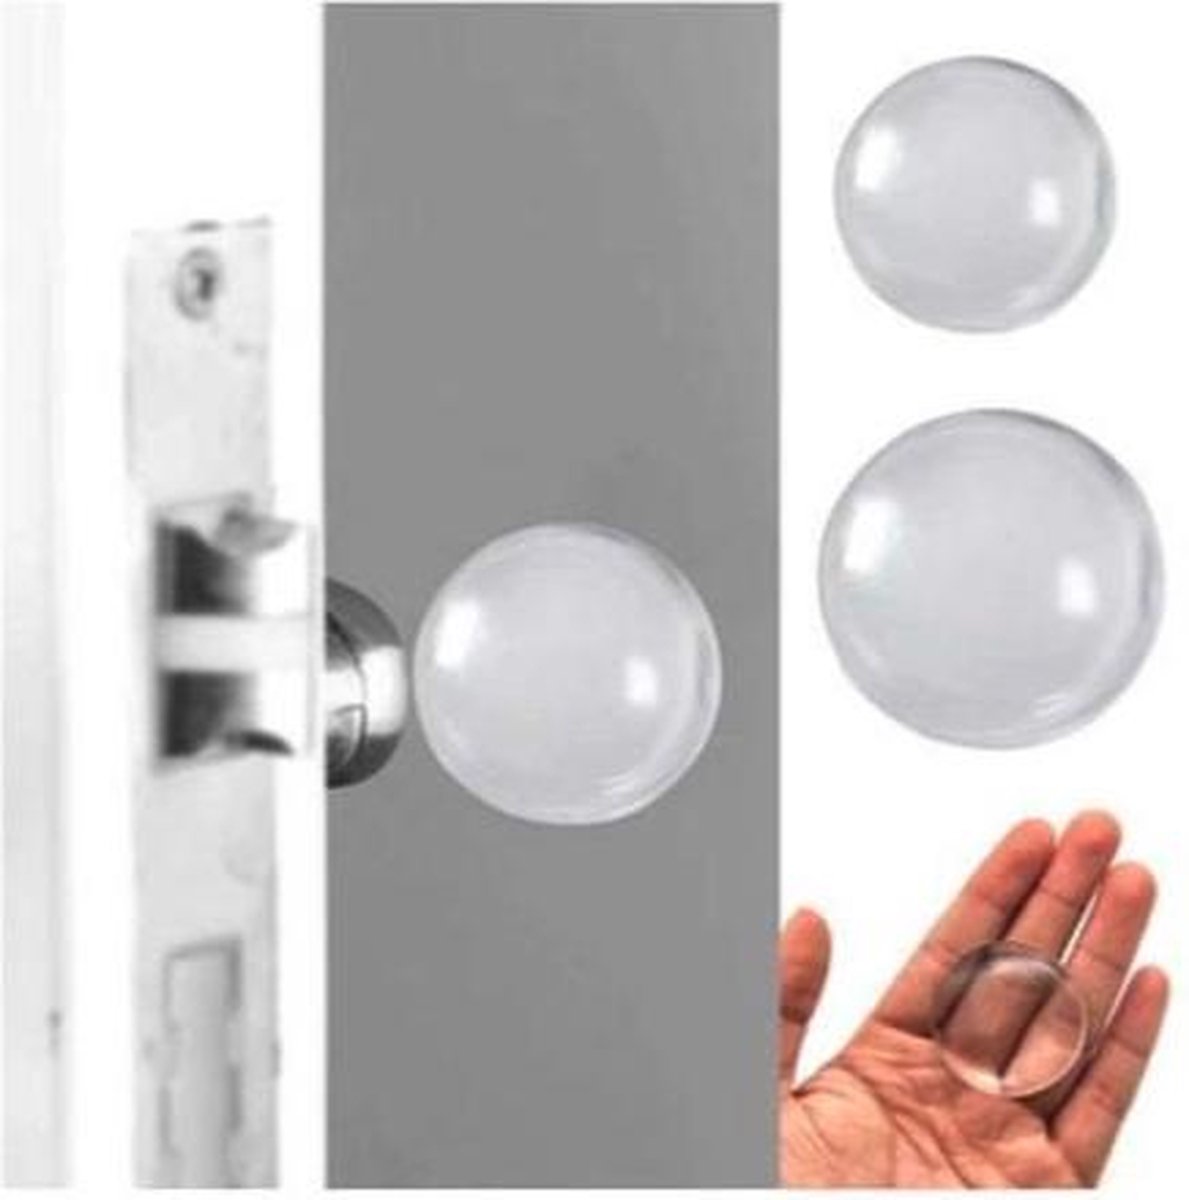 FSW-Products - Zelfklevende deurbeschermers - 2 Stuks - Transparant - 4cm dia - Deurbescherming - Deurstoppers - Muurbeschermer - Muurbescherming - Deurstoppers - Siliconen deurstoppers - Deurklink buffers - Deurklink - Flexibel - Stootrubber deur